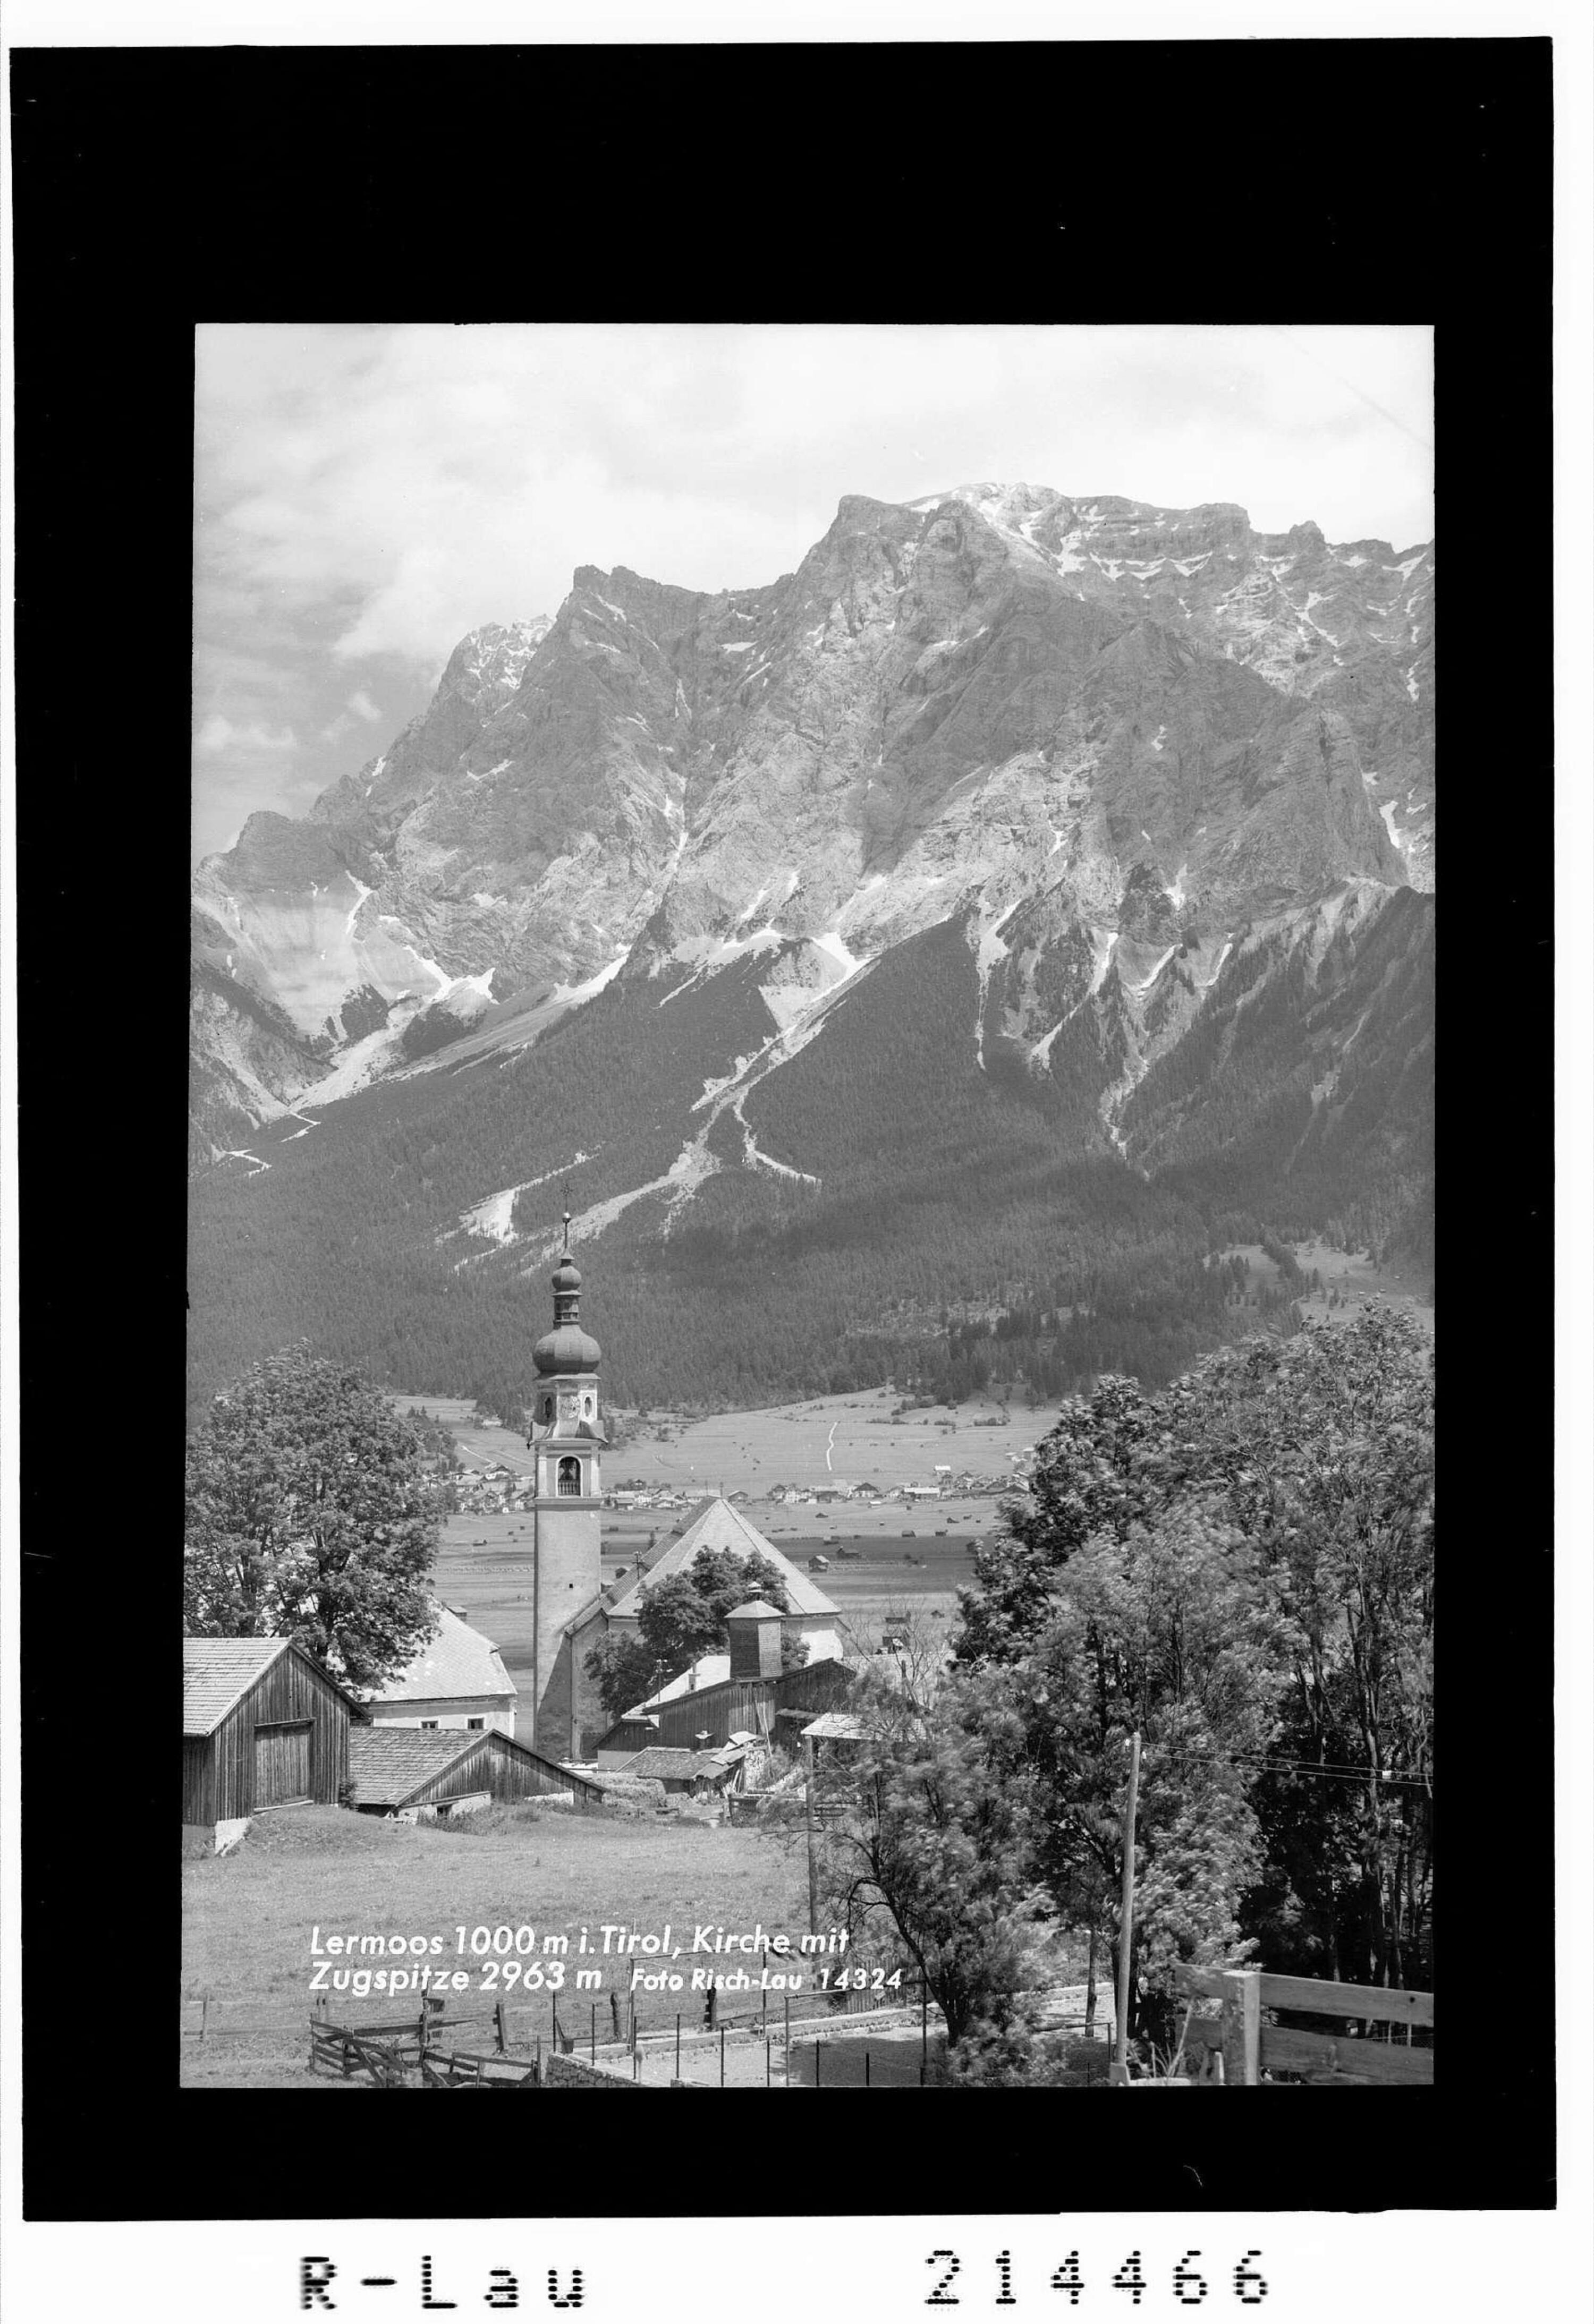 Lermoos 1000 m in Tirol, Kirche mit Zugspitze 2963 m></div>


    <hr>
    <div class=